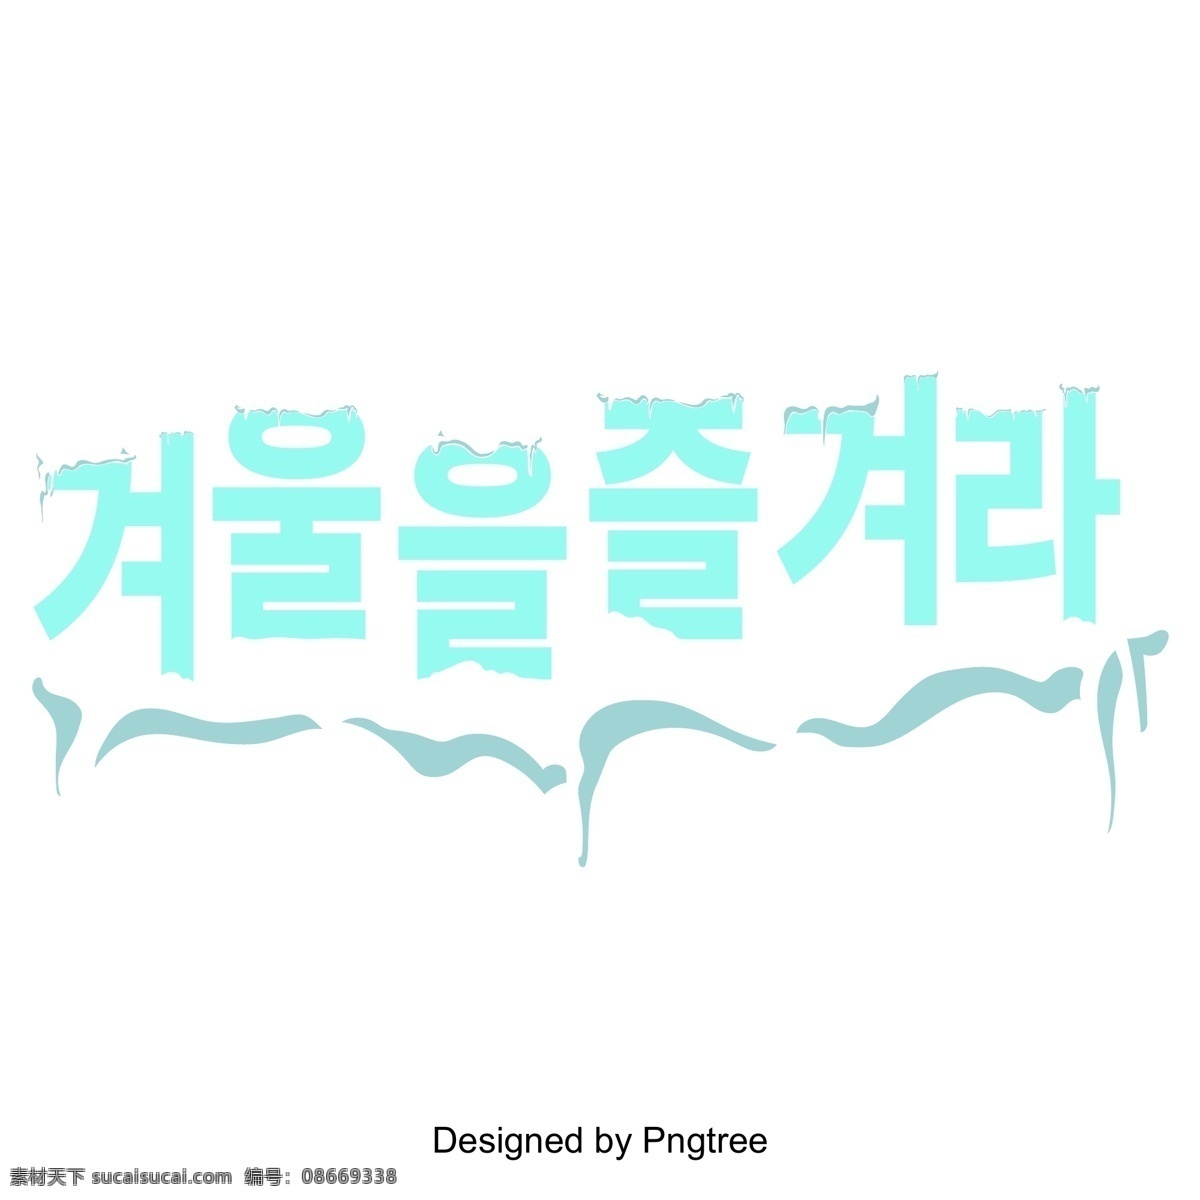 根据 字体 韩国 冬季里 享受 韩文 季节变换 标题 字形 现场 韩国字体 字体设计 字体的效果